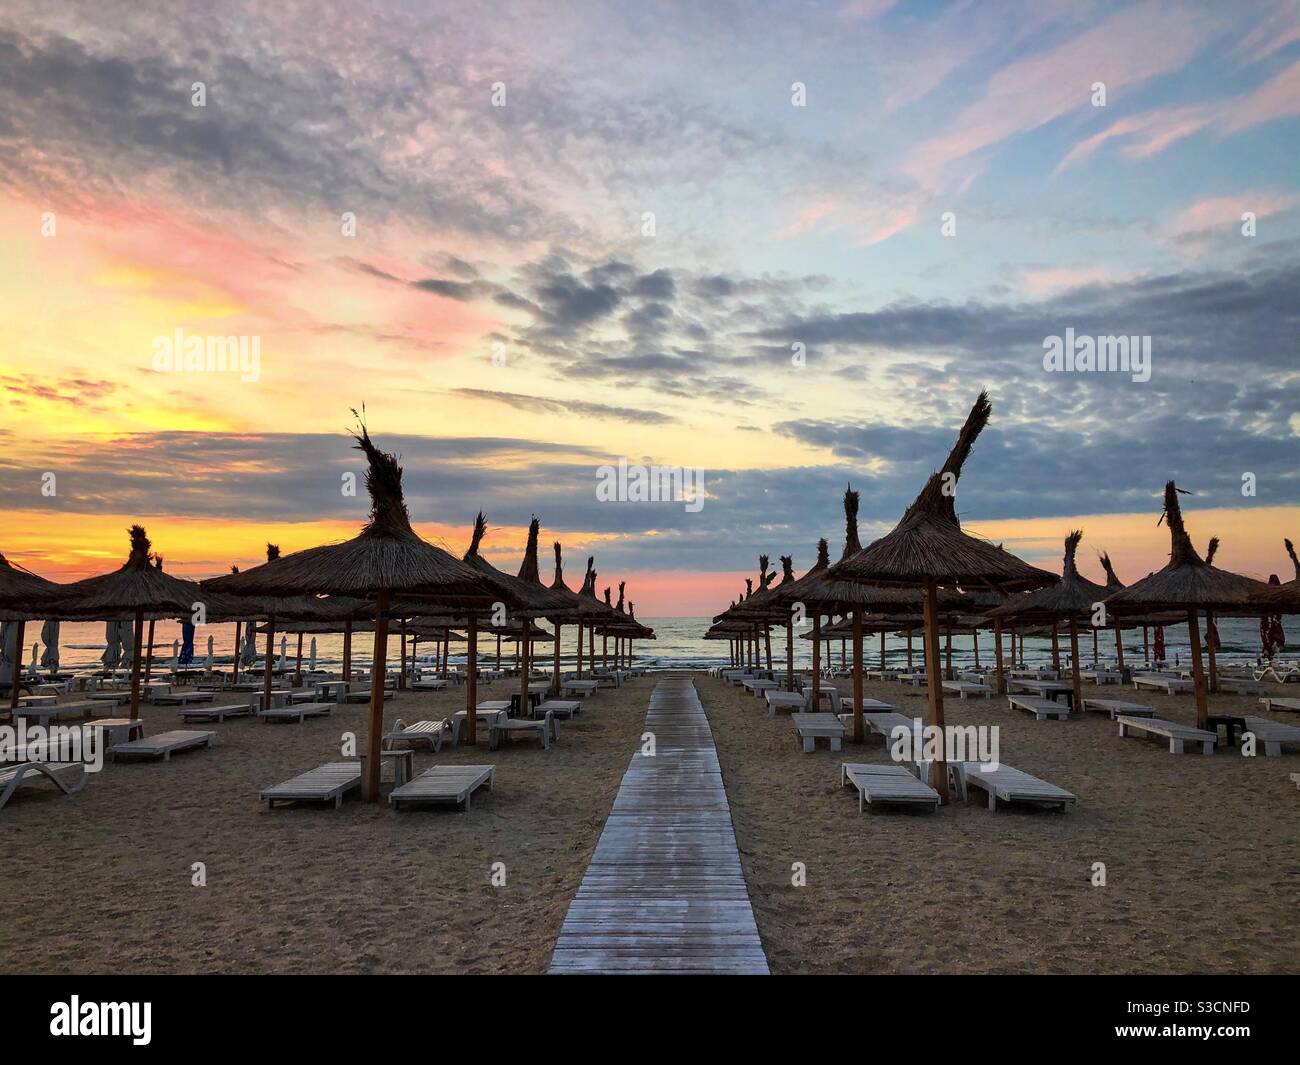 Spiaggia vuota con ombrelloni di paglia all'alba Foto Stock